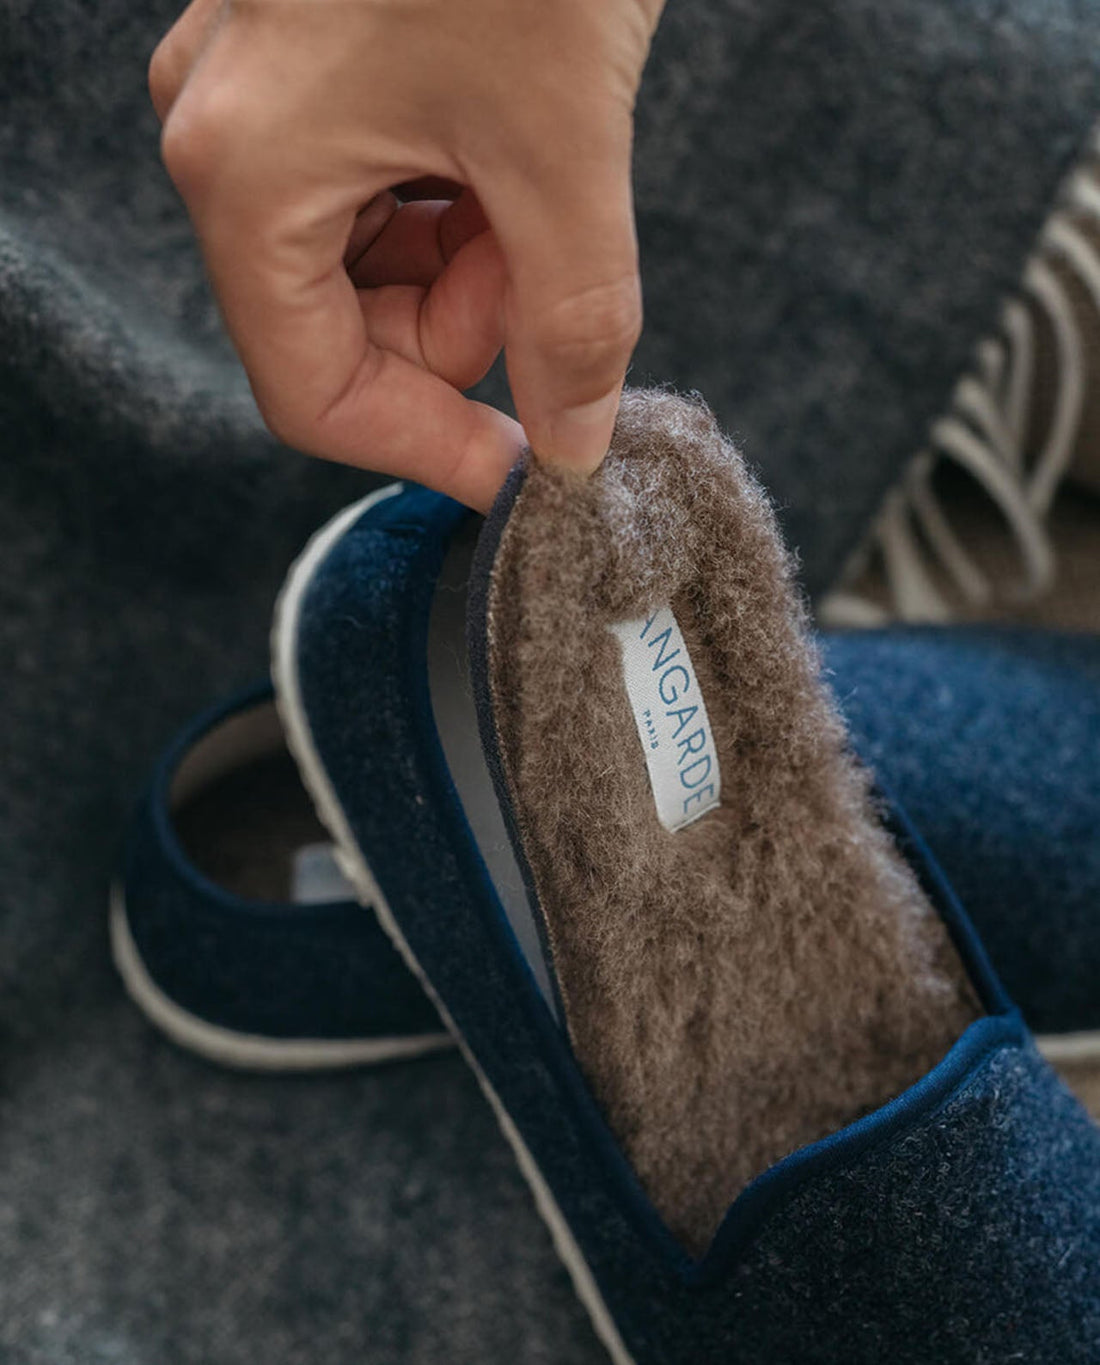 marché commun angarde chaussons homme slippers laine recyclée fabriqués en europe bleu marine